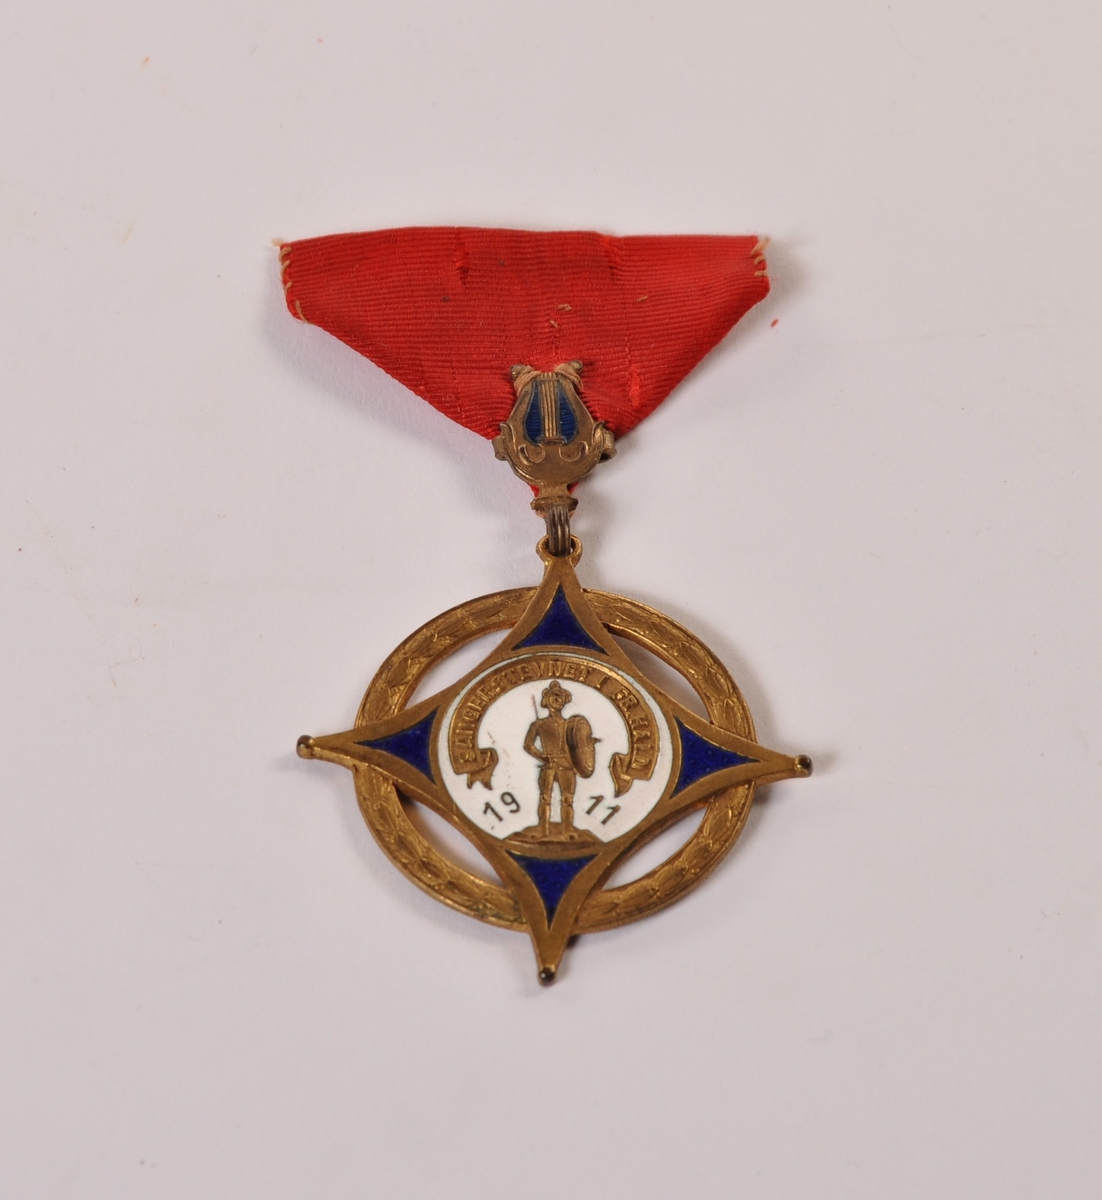 medalje i metall og emalje med rødt ordensbånd. Sangerstevnet i Fr.hald 1911